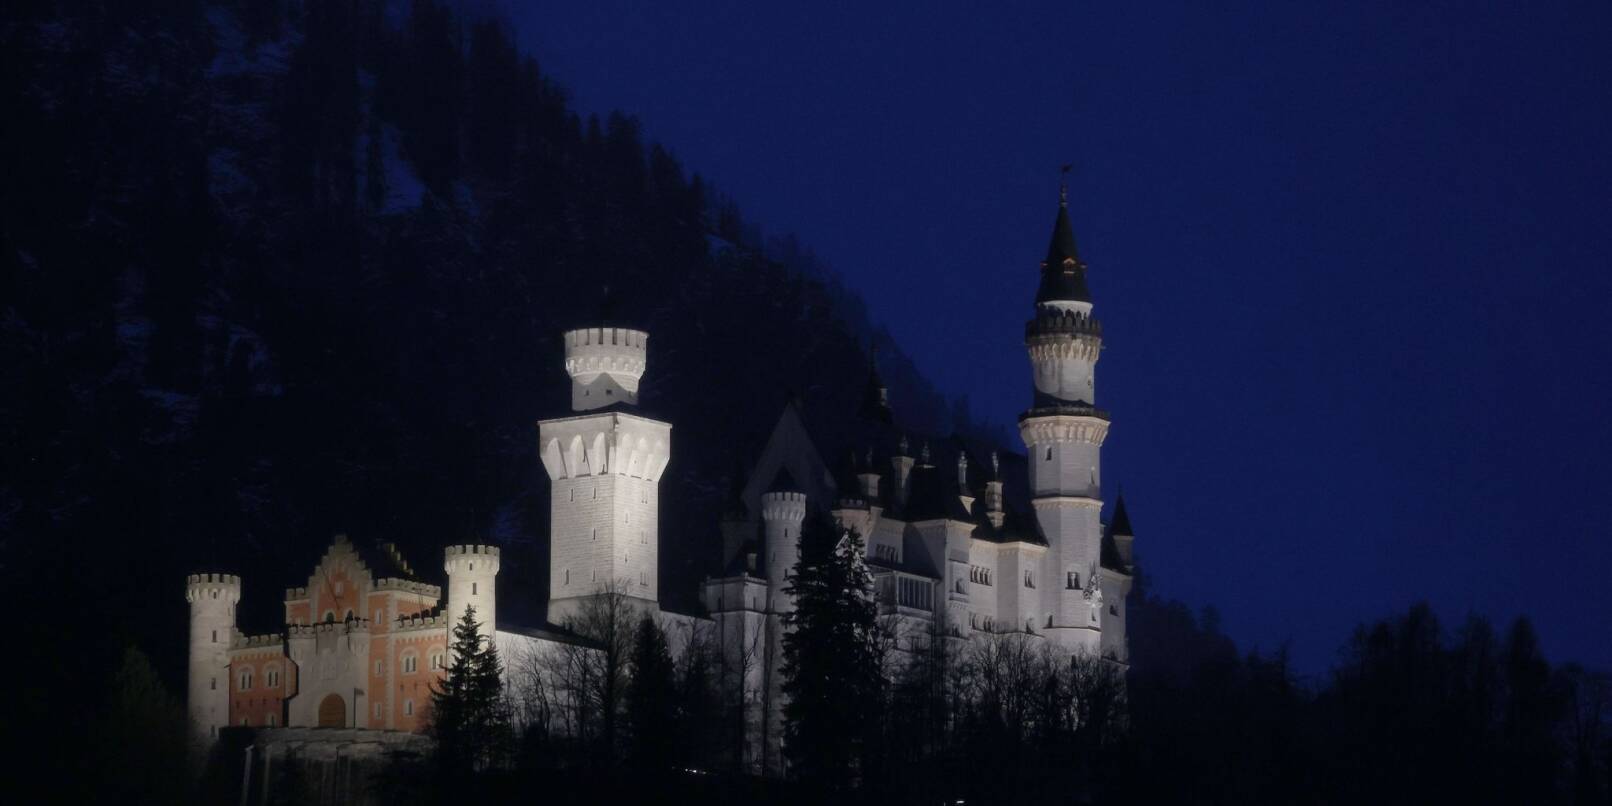 Nach dem Ende der Energiesparverordnung dürfen bayerische Baudenkmäler wieder beleuchtet werden: Auch das Schloss Neuschwanstein ist wieder illuminiert.